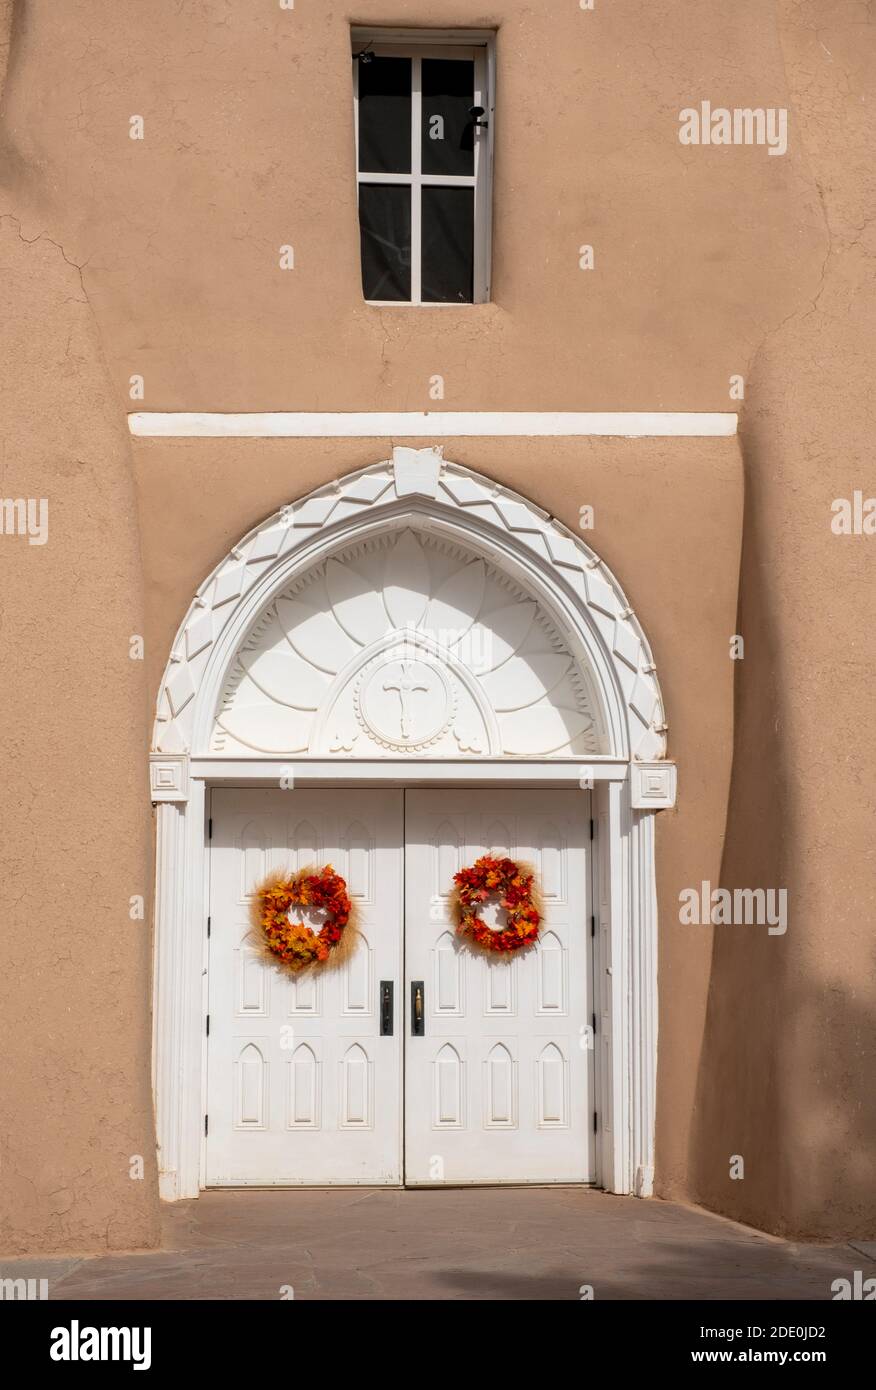 L'église adobe Mission de San Francisco de Asis - Saint François d'Assissi - à Ranchos de Taos, Nouveau-Mexique, Etats-Unis Banque D'Images